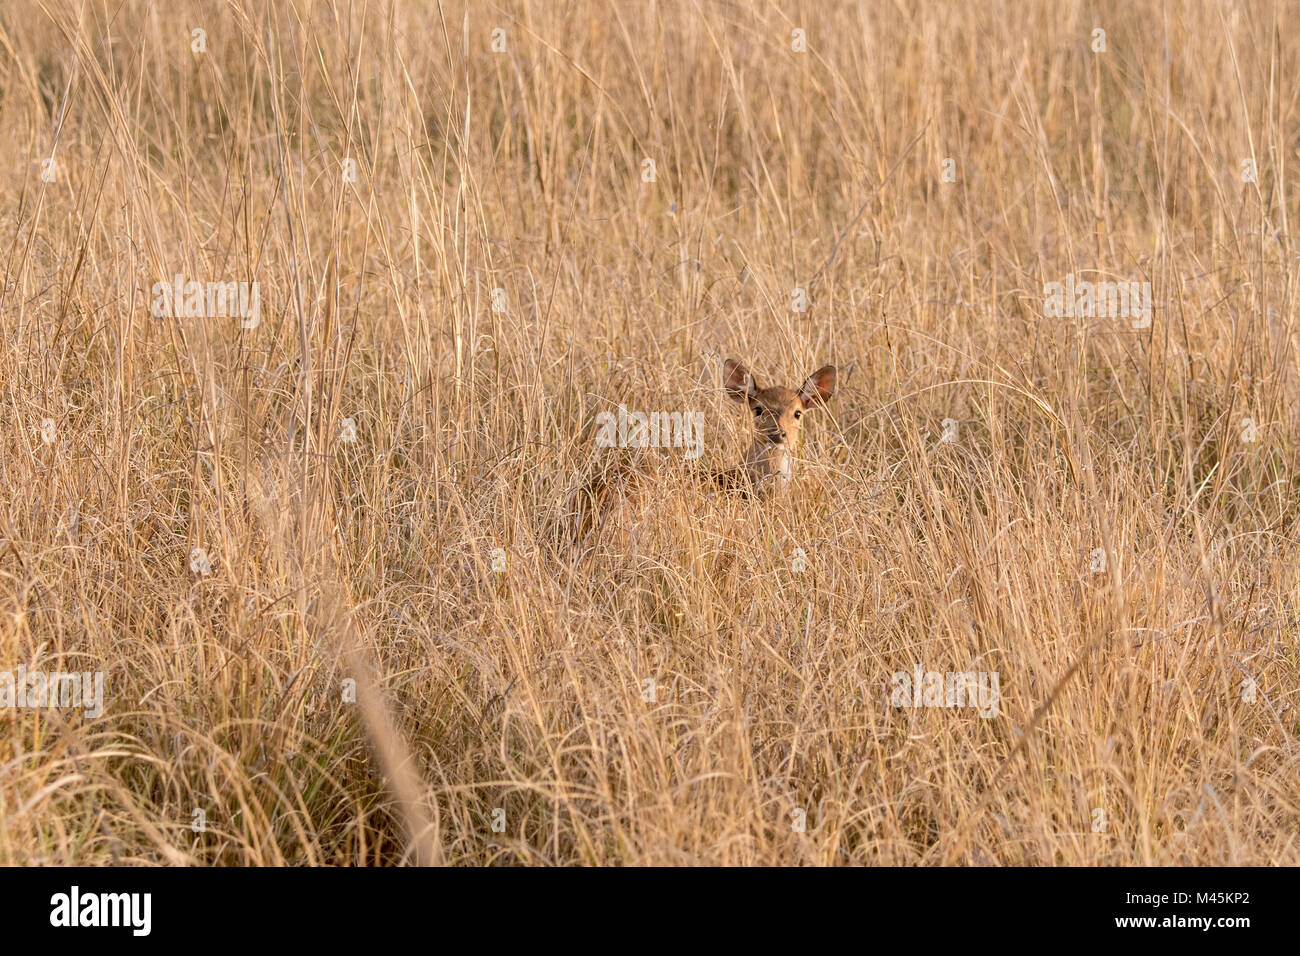 Los jóvenes salvajes Ciervos Axis o Chital fawn, Axis axis, ocultando en pasto seco en el Parque Nacional de Bandhavgarh, en Madhya Pradesh, India Foto de stock